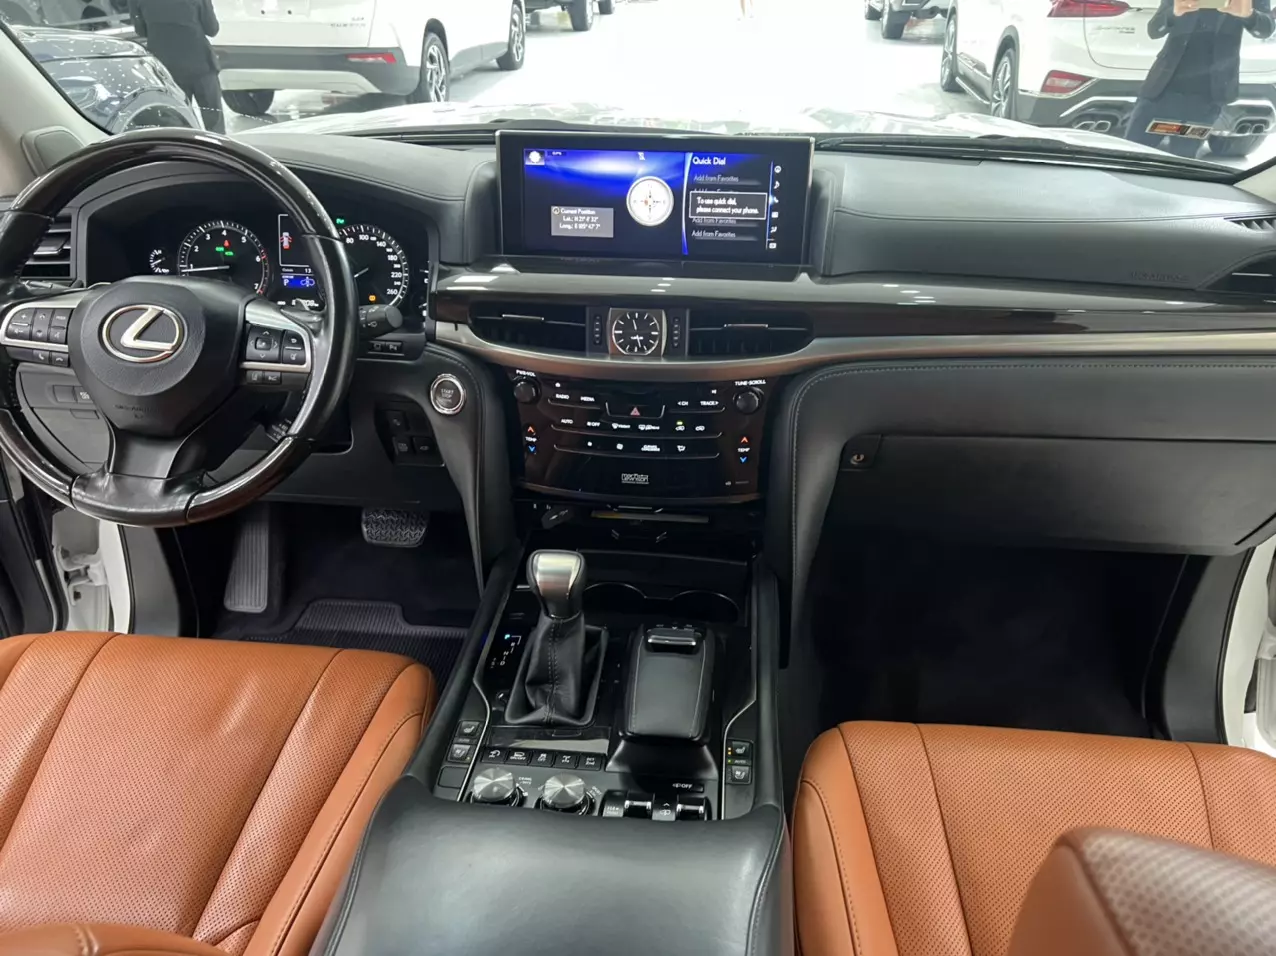 Bán Lexus LX570 Trung Đông sản xuất năm 2016 màu Trắng nội thất Nâu da bò, xe đăng ký tên cá nhân đi hơn 10v Km-8